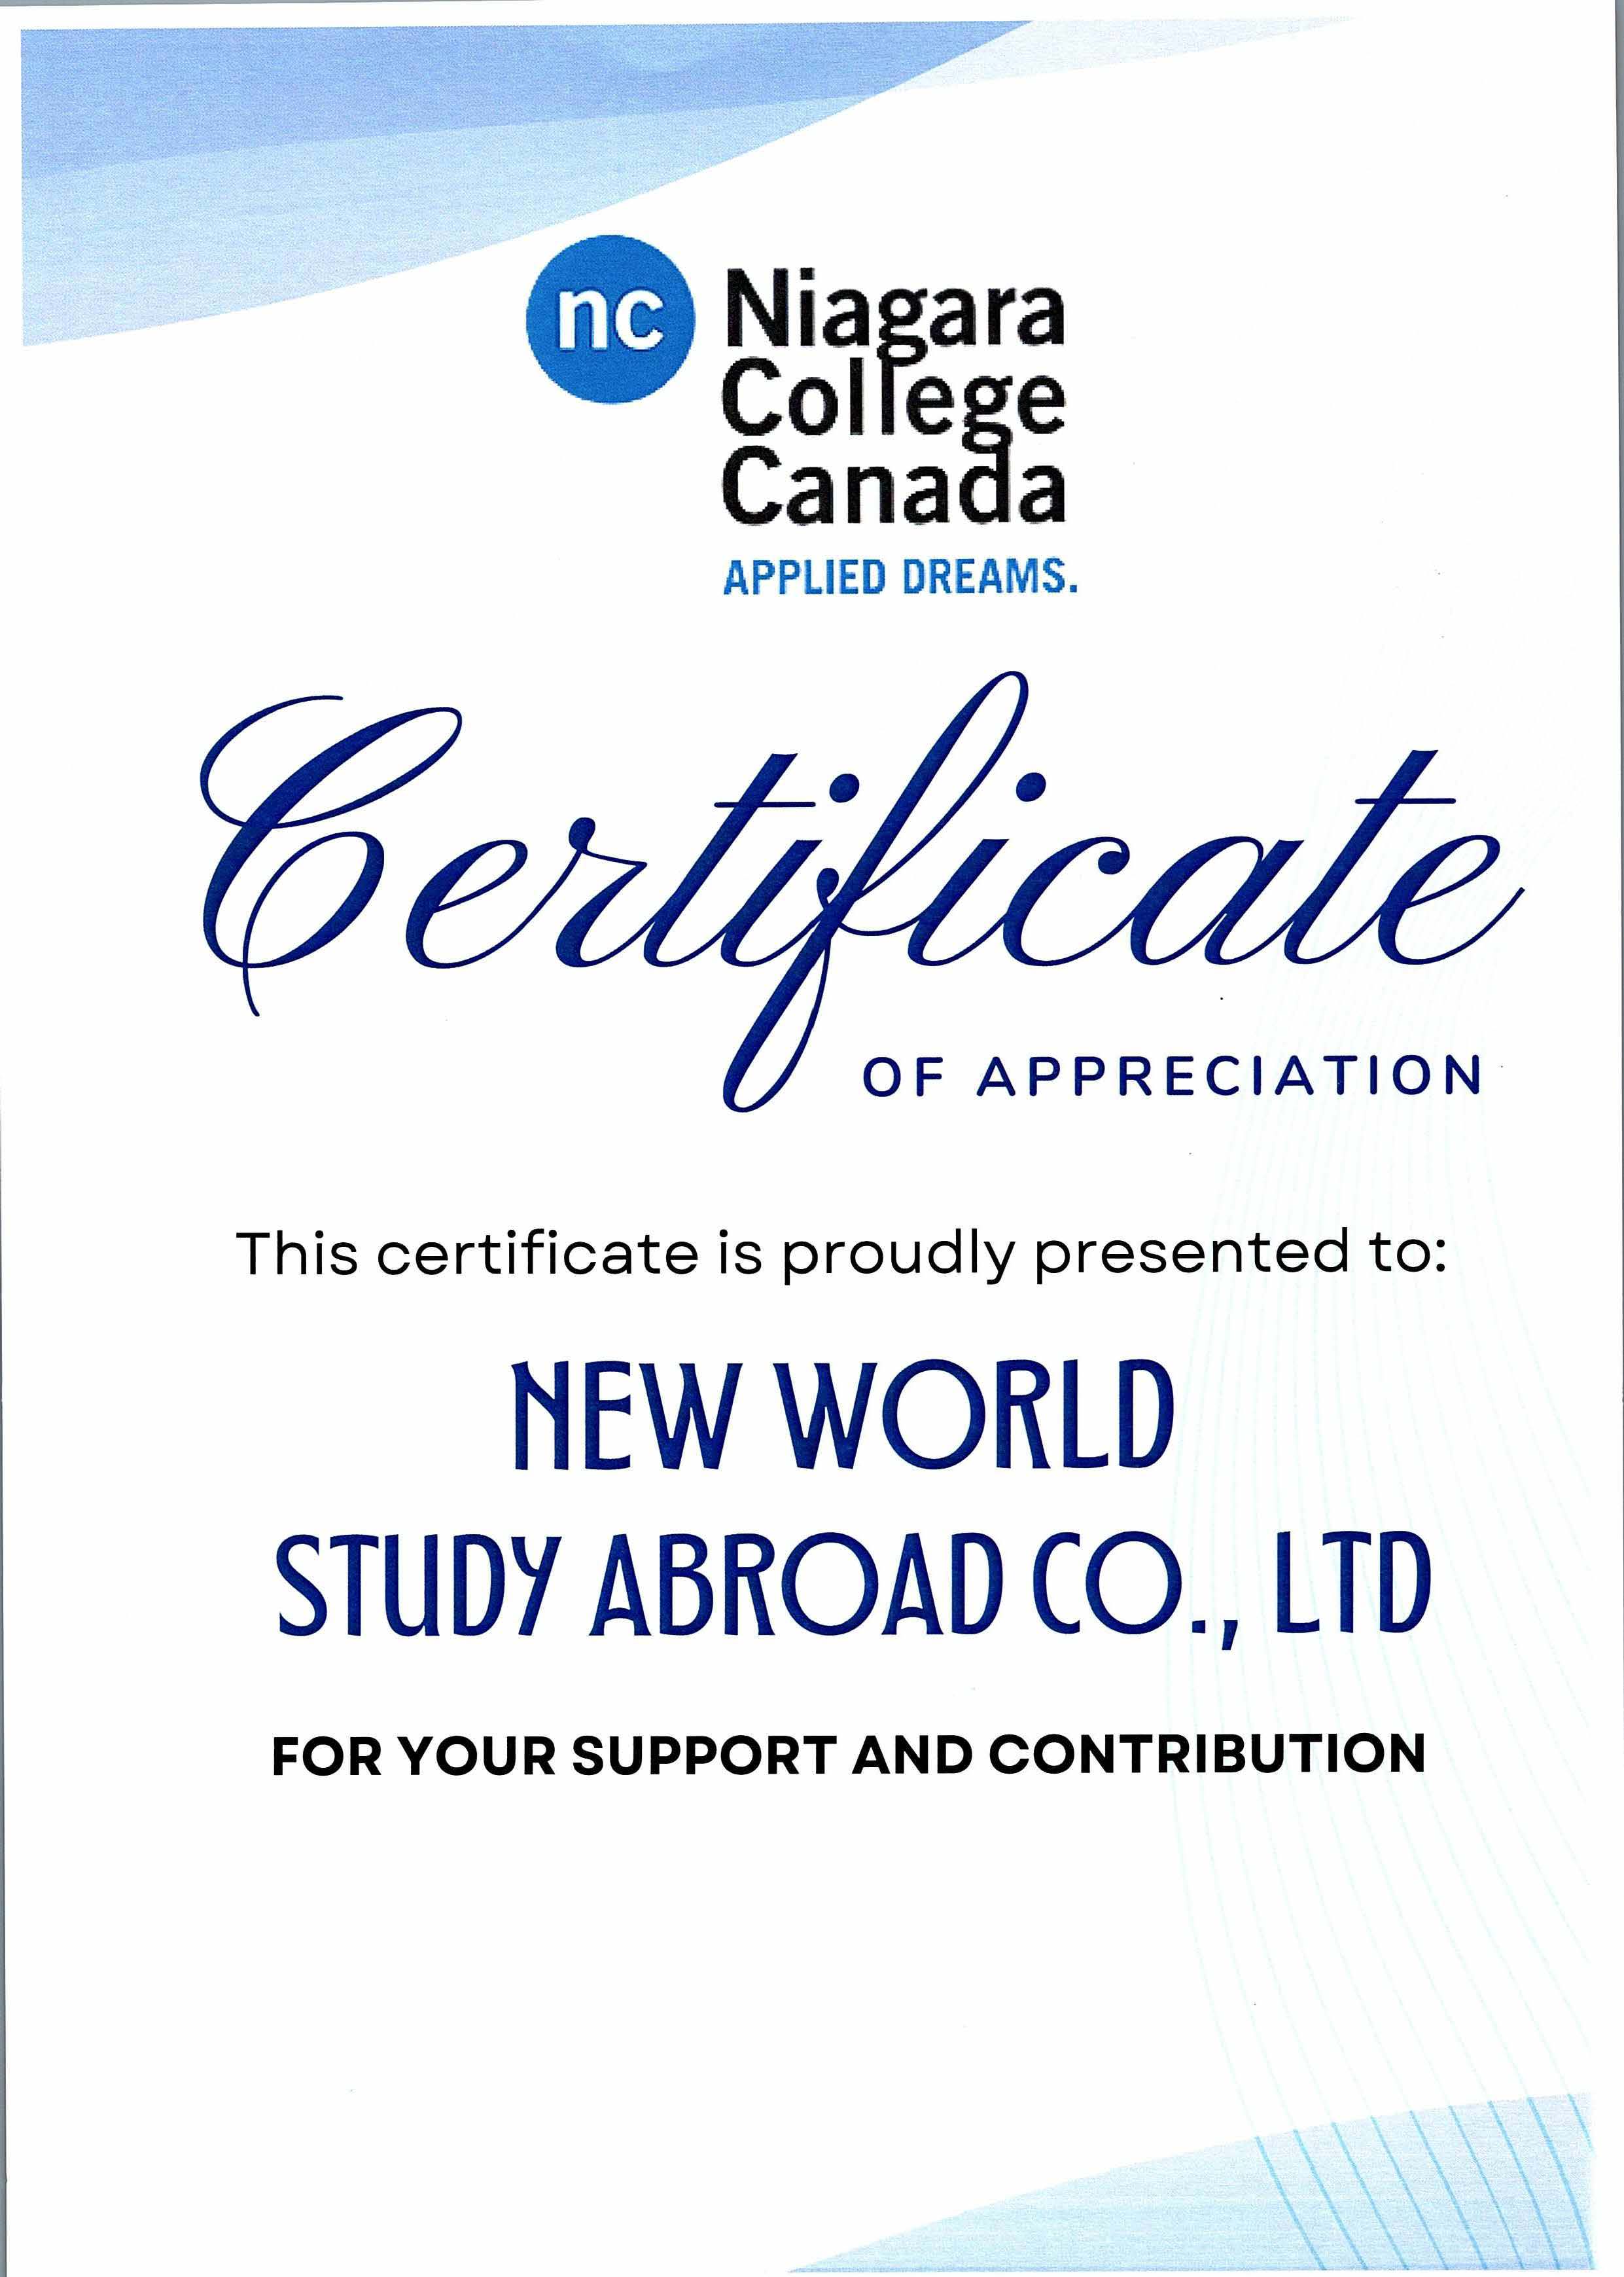 Certificate of Appreciation từ Niagara College, Canada 2022